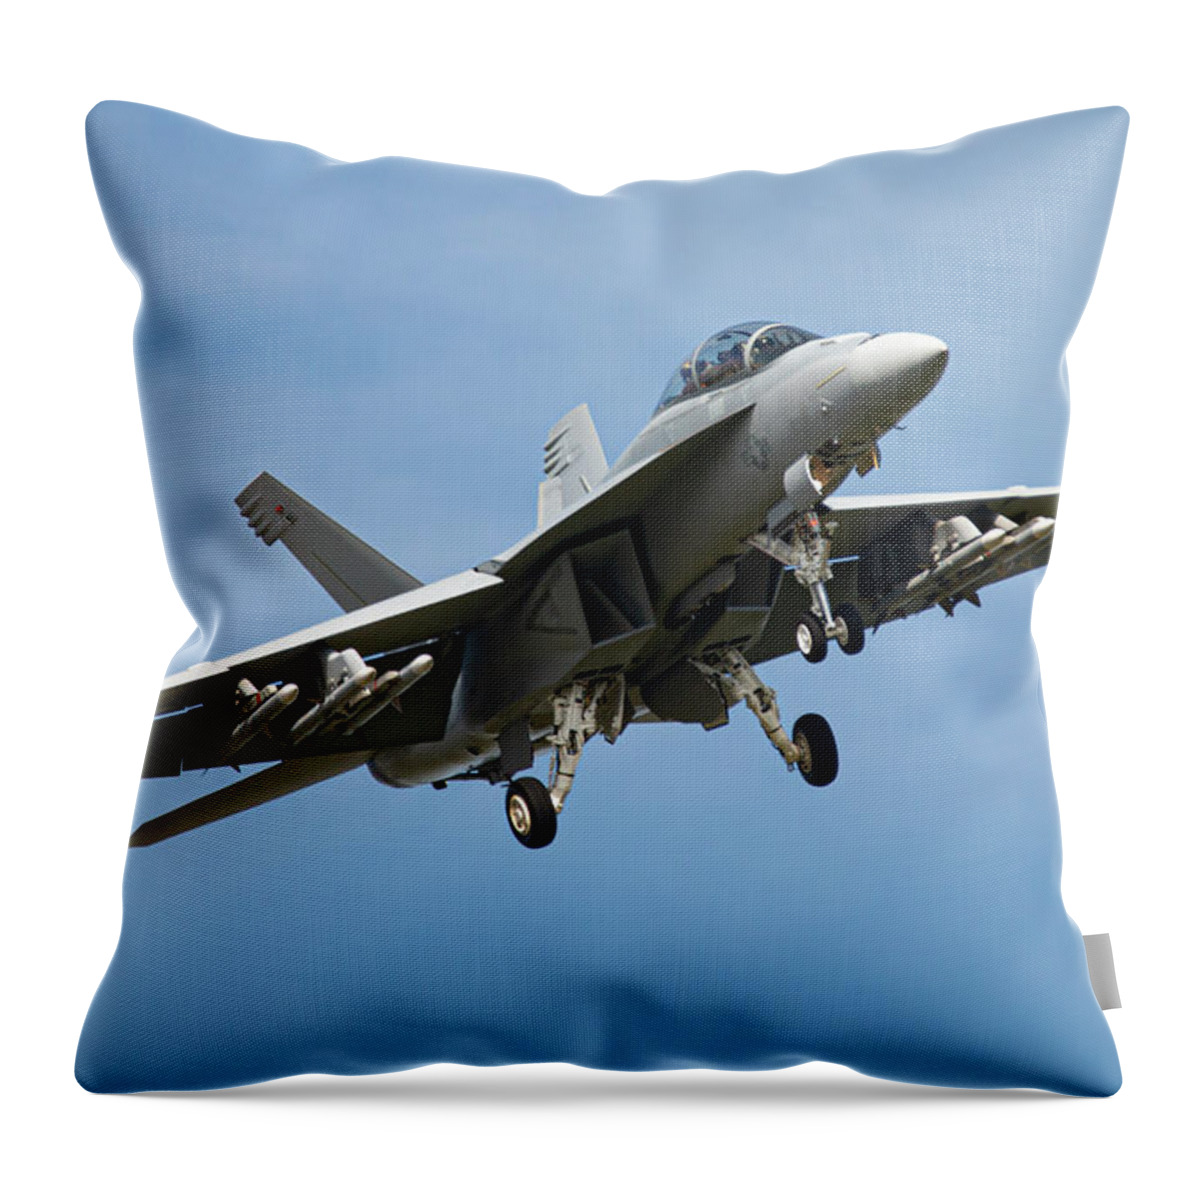 Fa/18 Super Hornet Throw Pillow featuring the digital art US Navy Super Hornet by Airpower Art